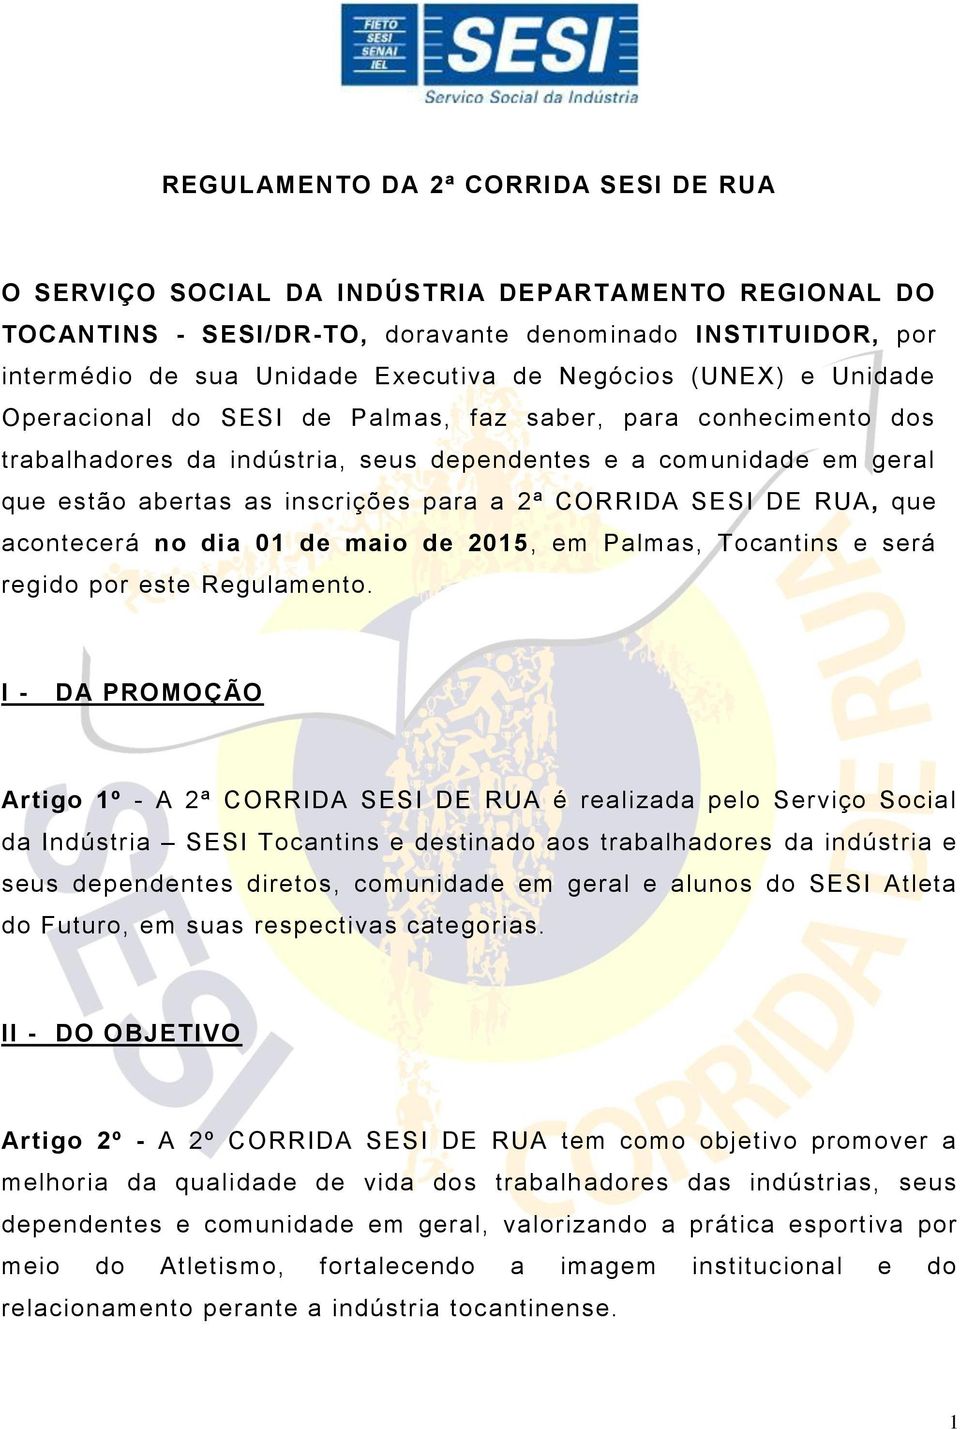 2ª CORRIDA SESI DE RUA, que acontecerá no dia 01 de maio de 2015, em Palmas, Tocantins e será regido por este Regulamento.